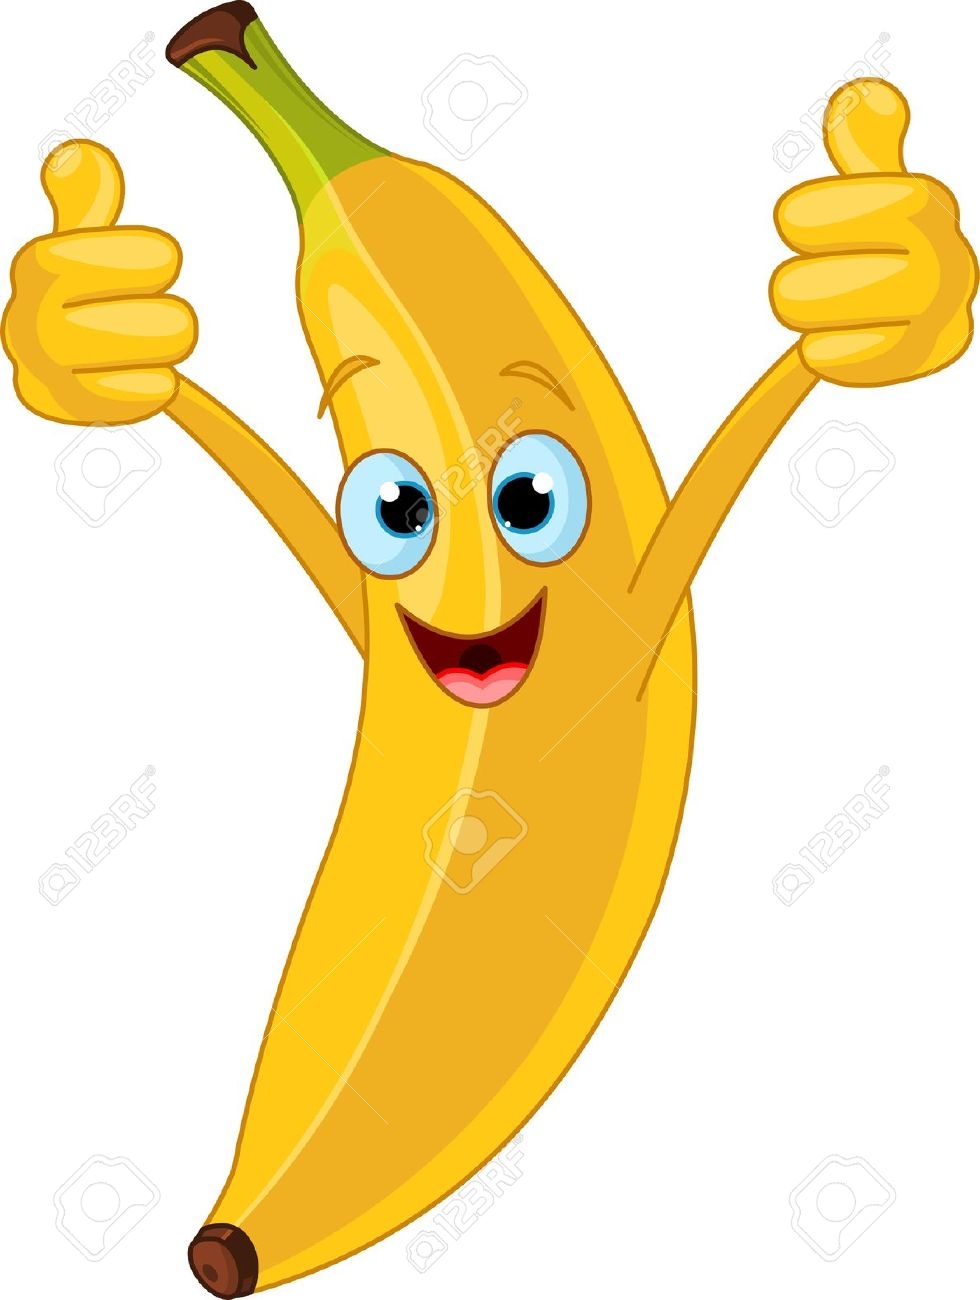 Banana clipart happy #11